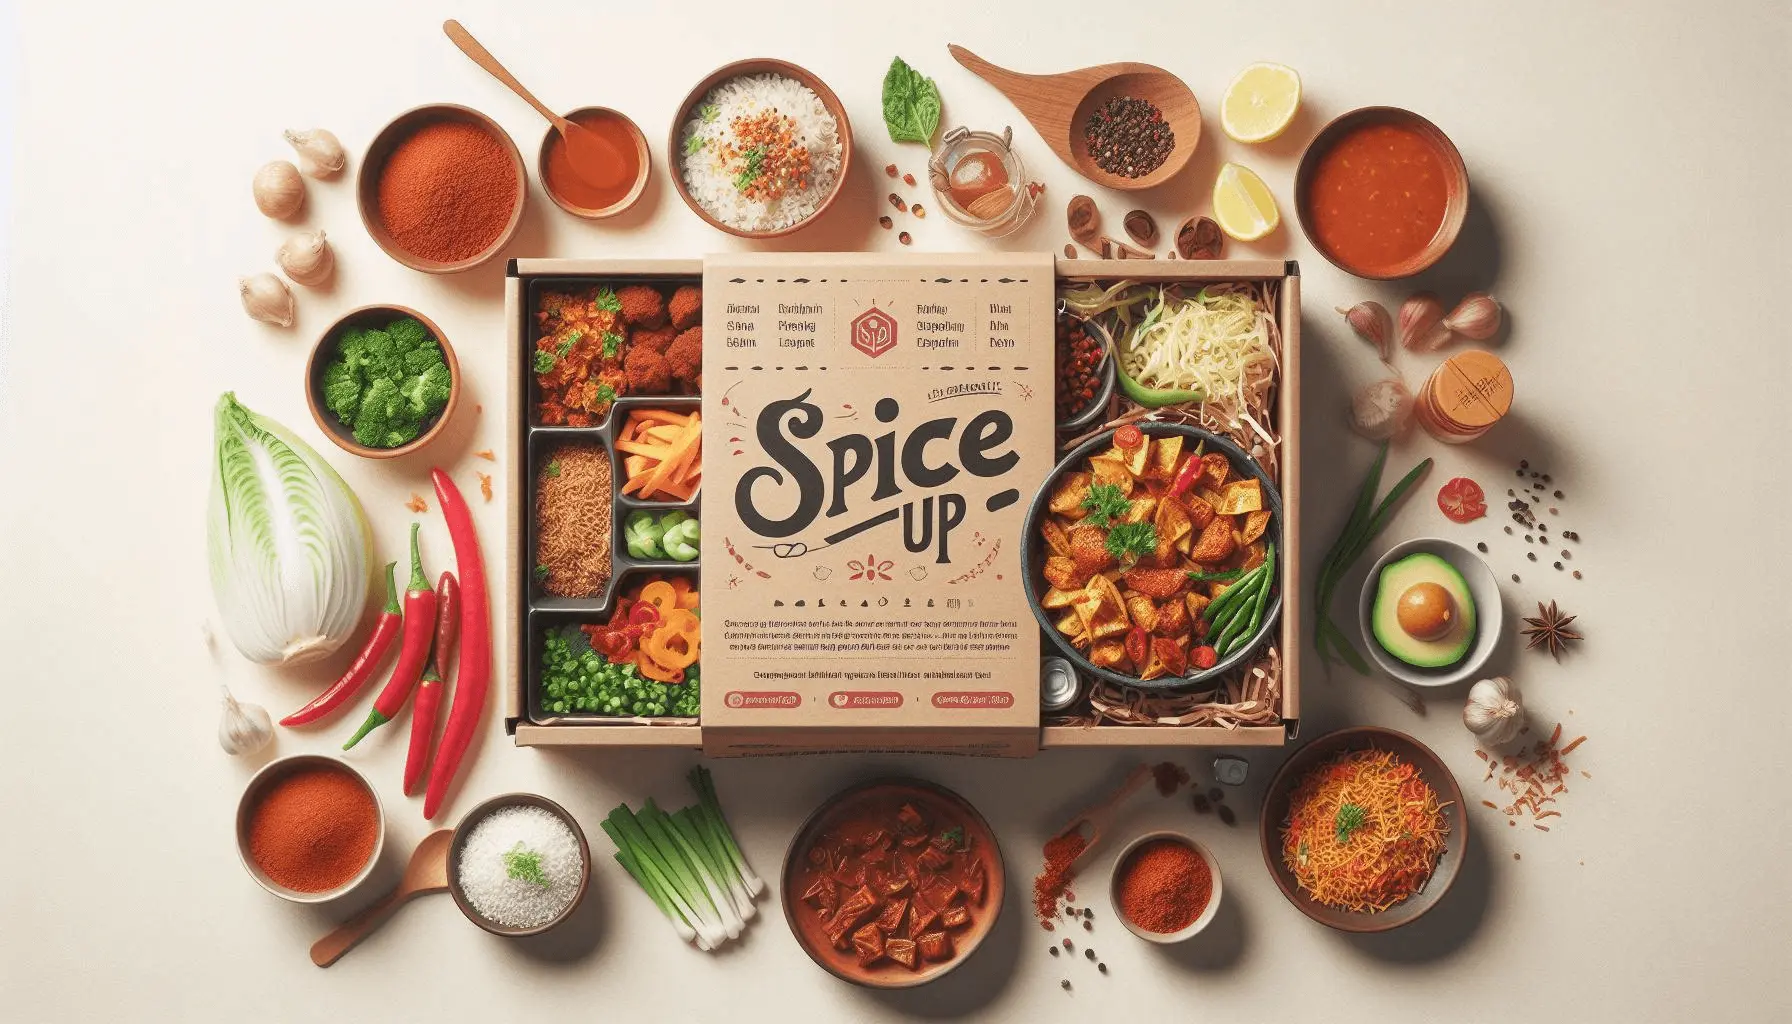 Meluncurkan layanan berlangganan “Spice it Up” bisa mengubah permainan image